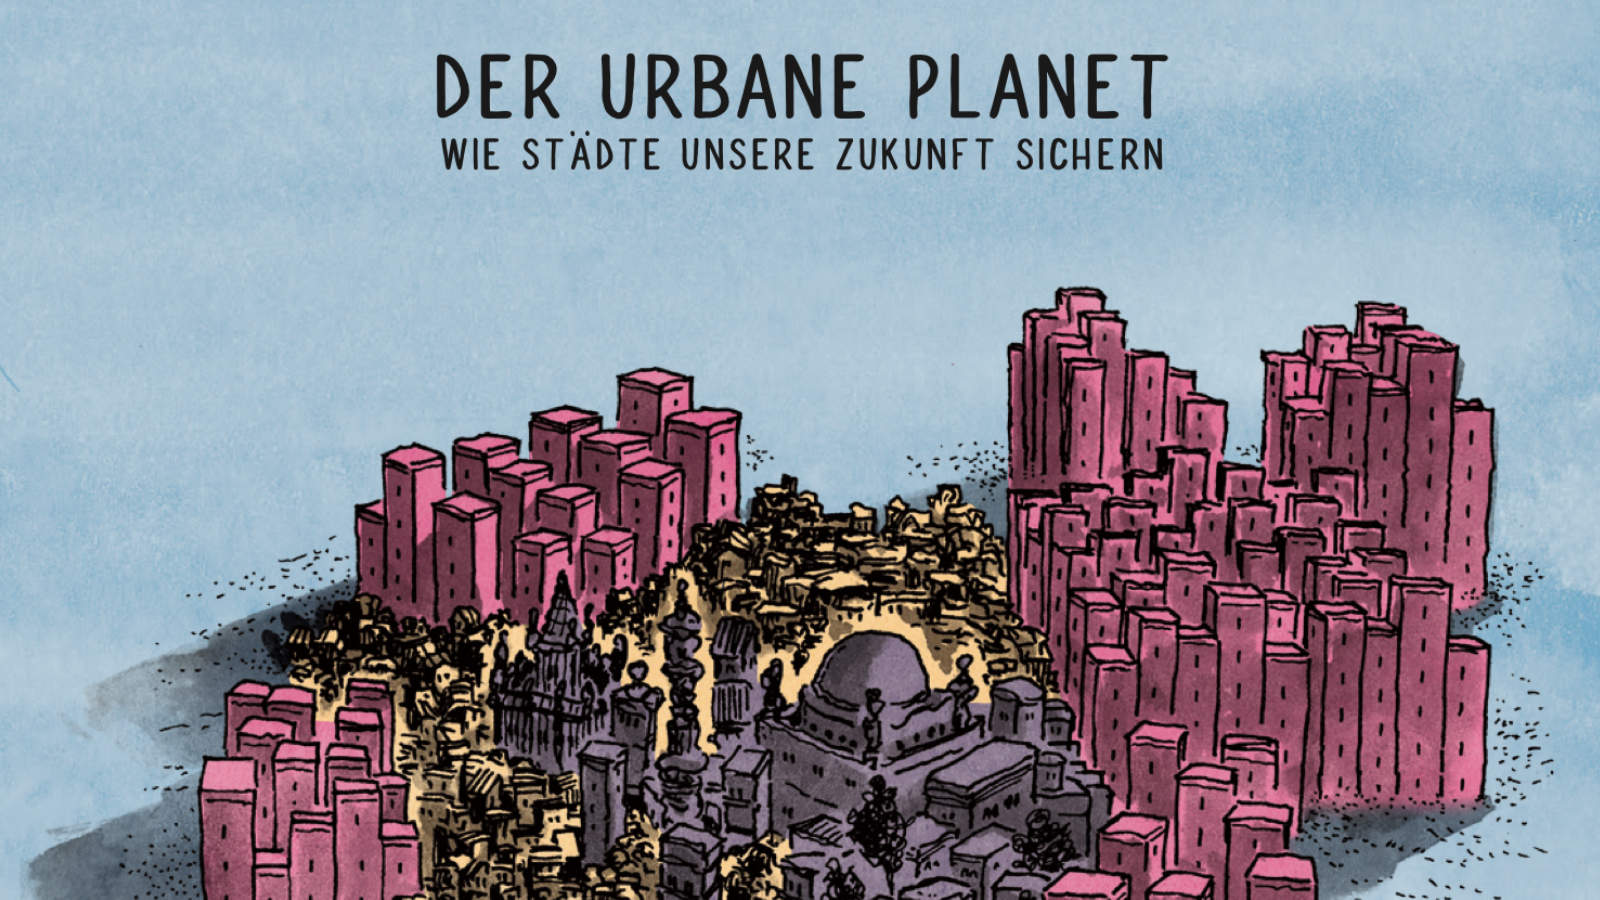 Comic: Der urbane Planet